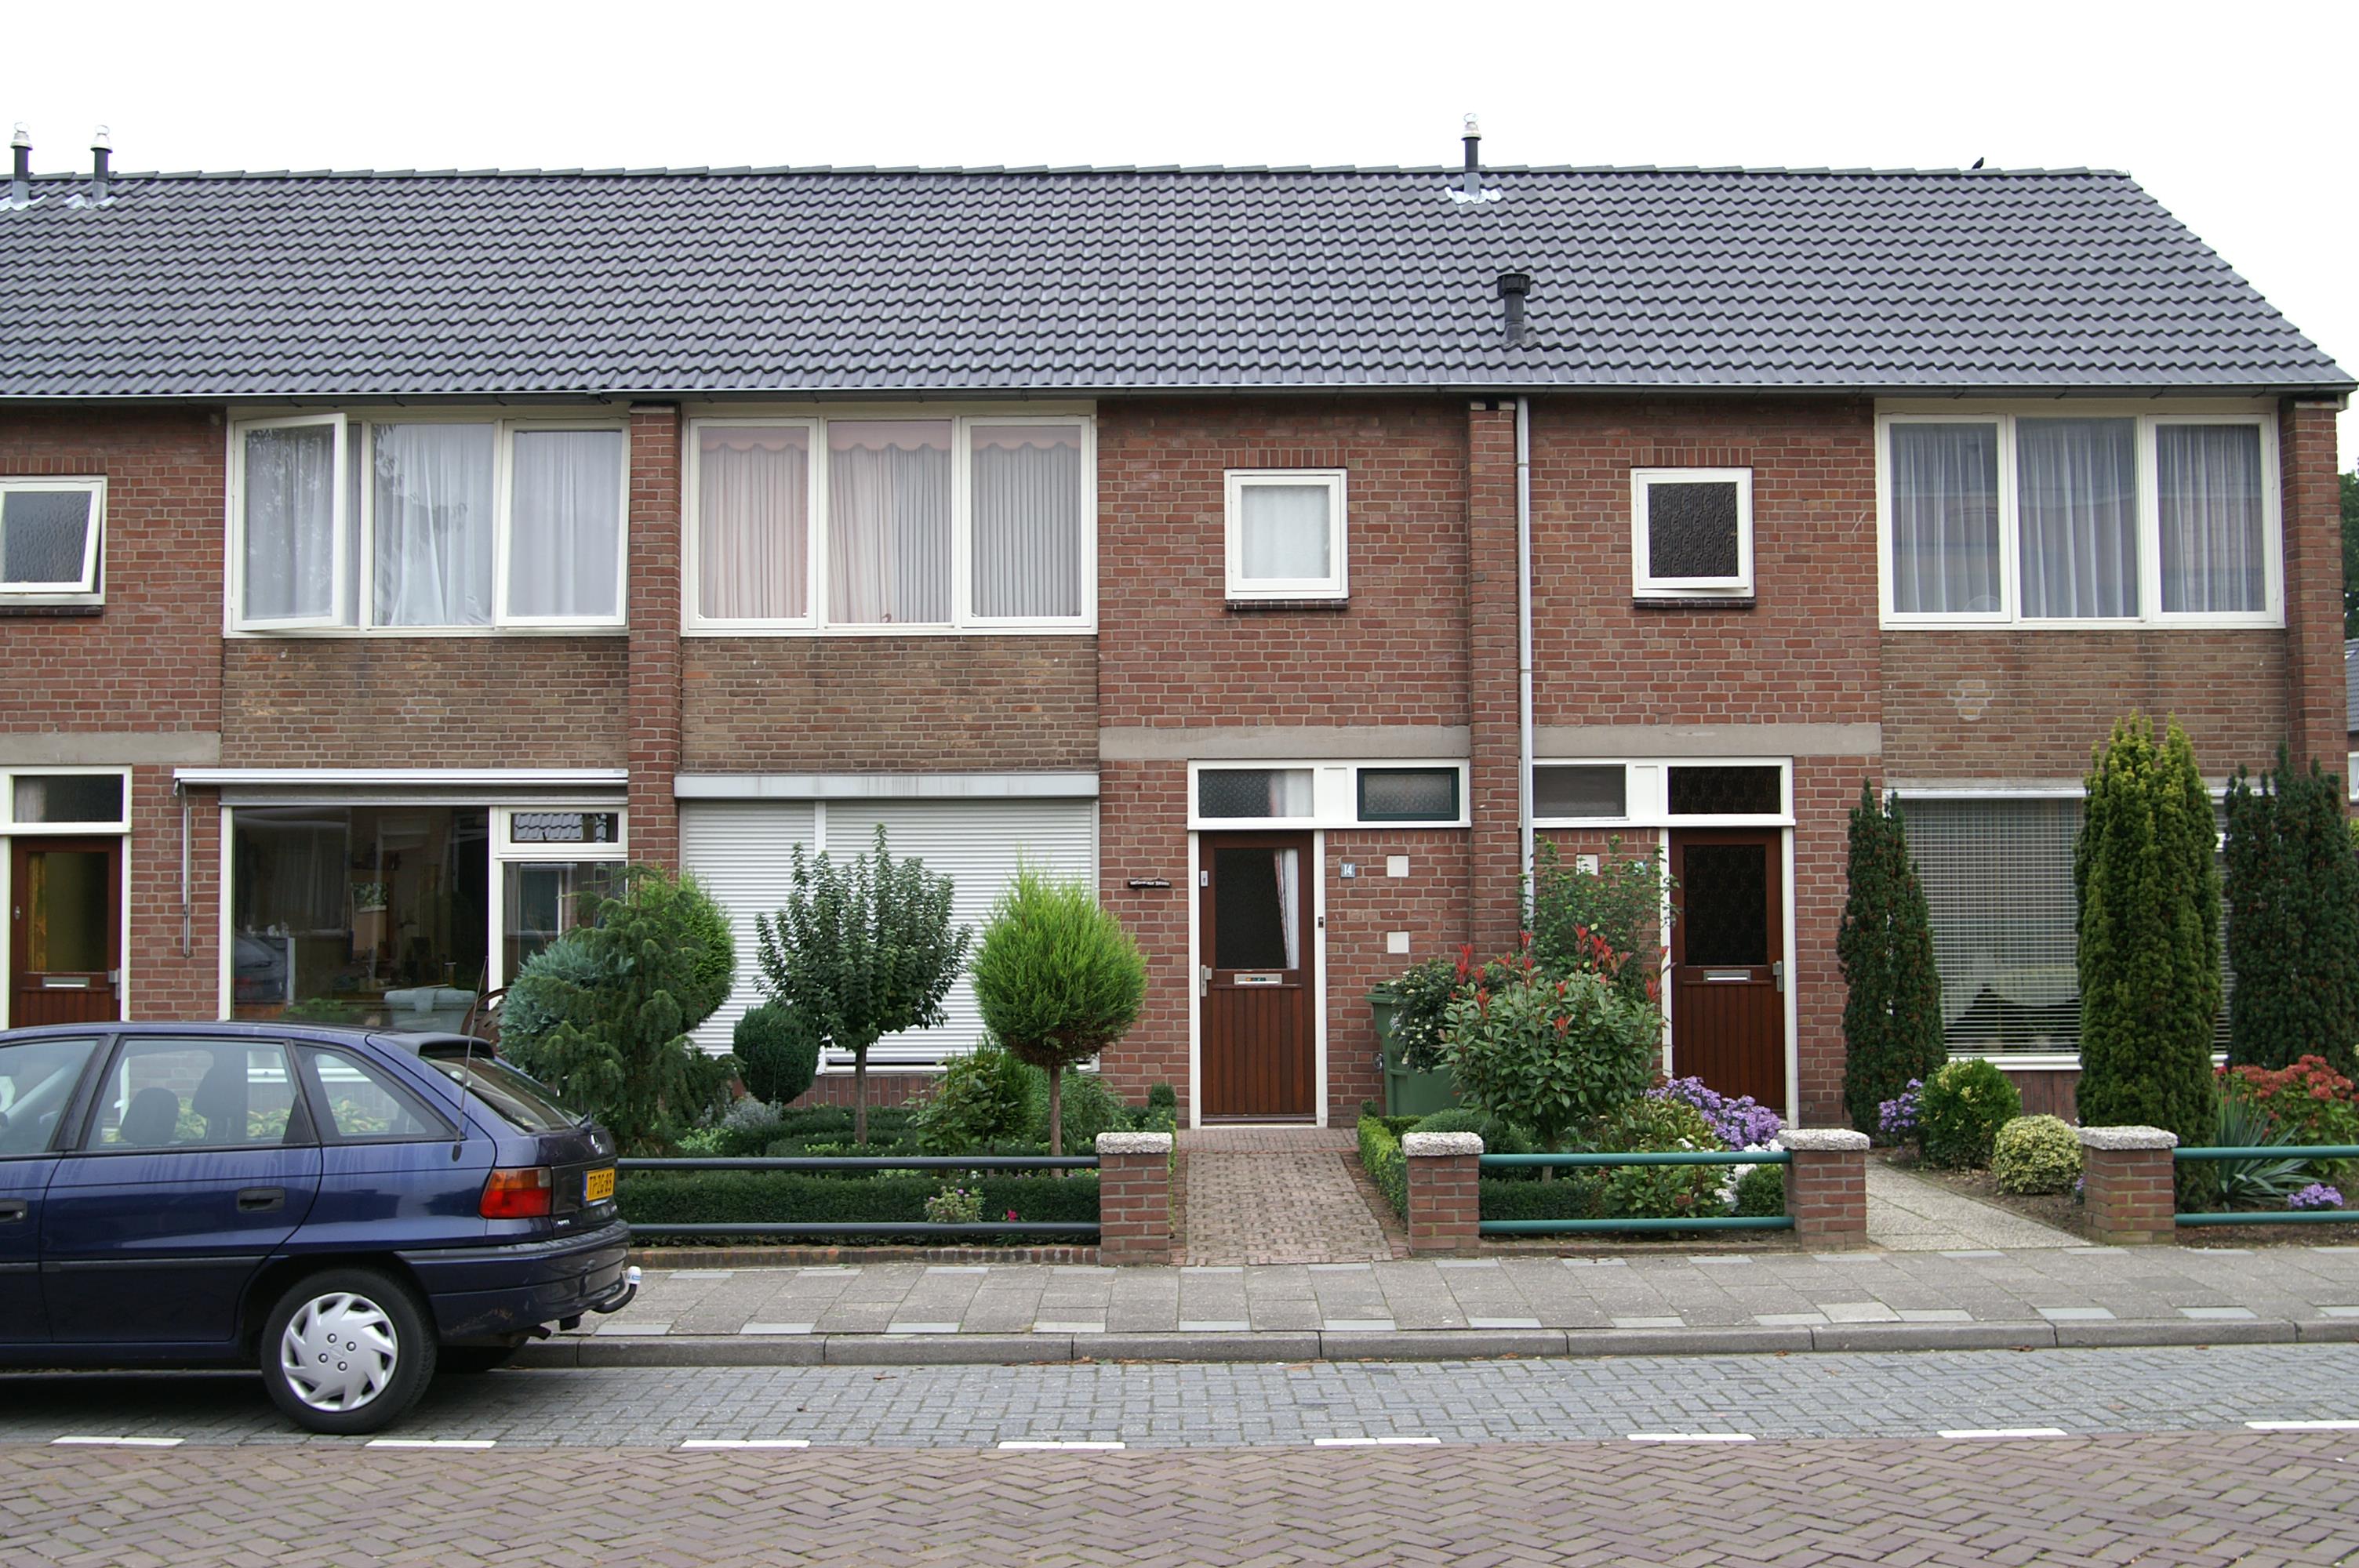 Hertog Johannstraat 14, 6901 EK Zevenaar, Nederland